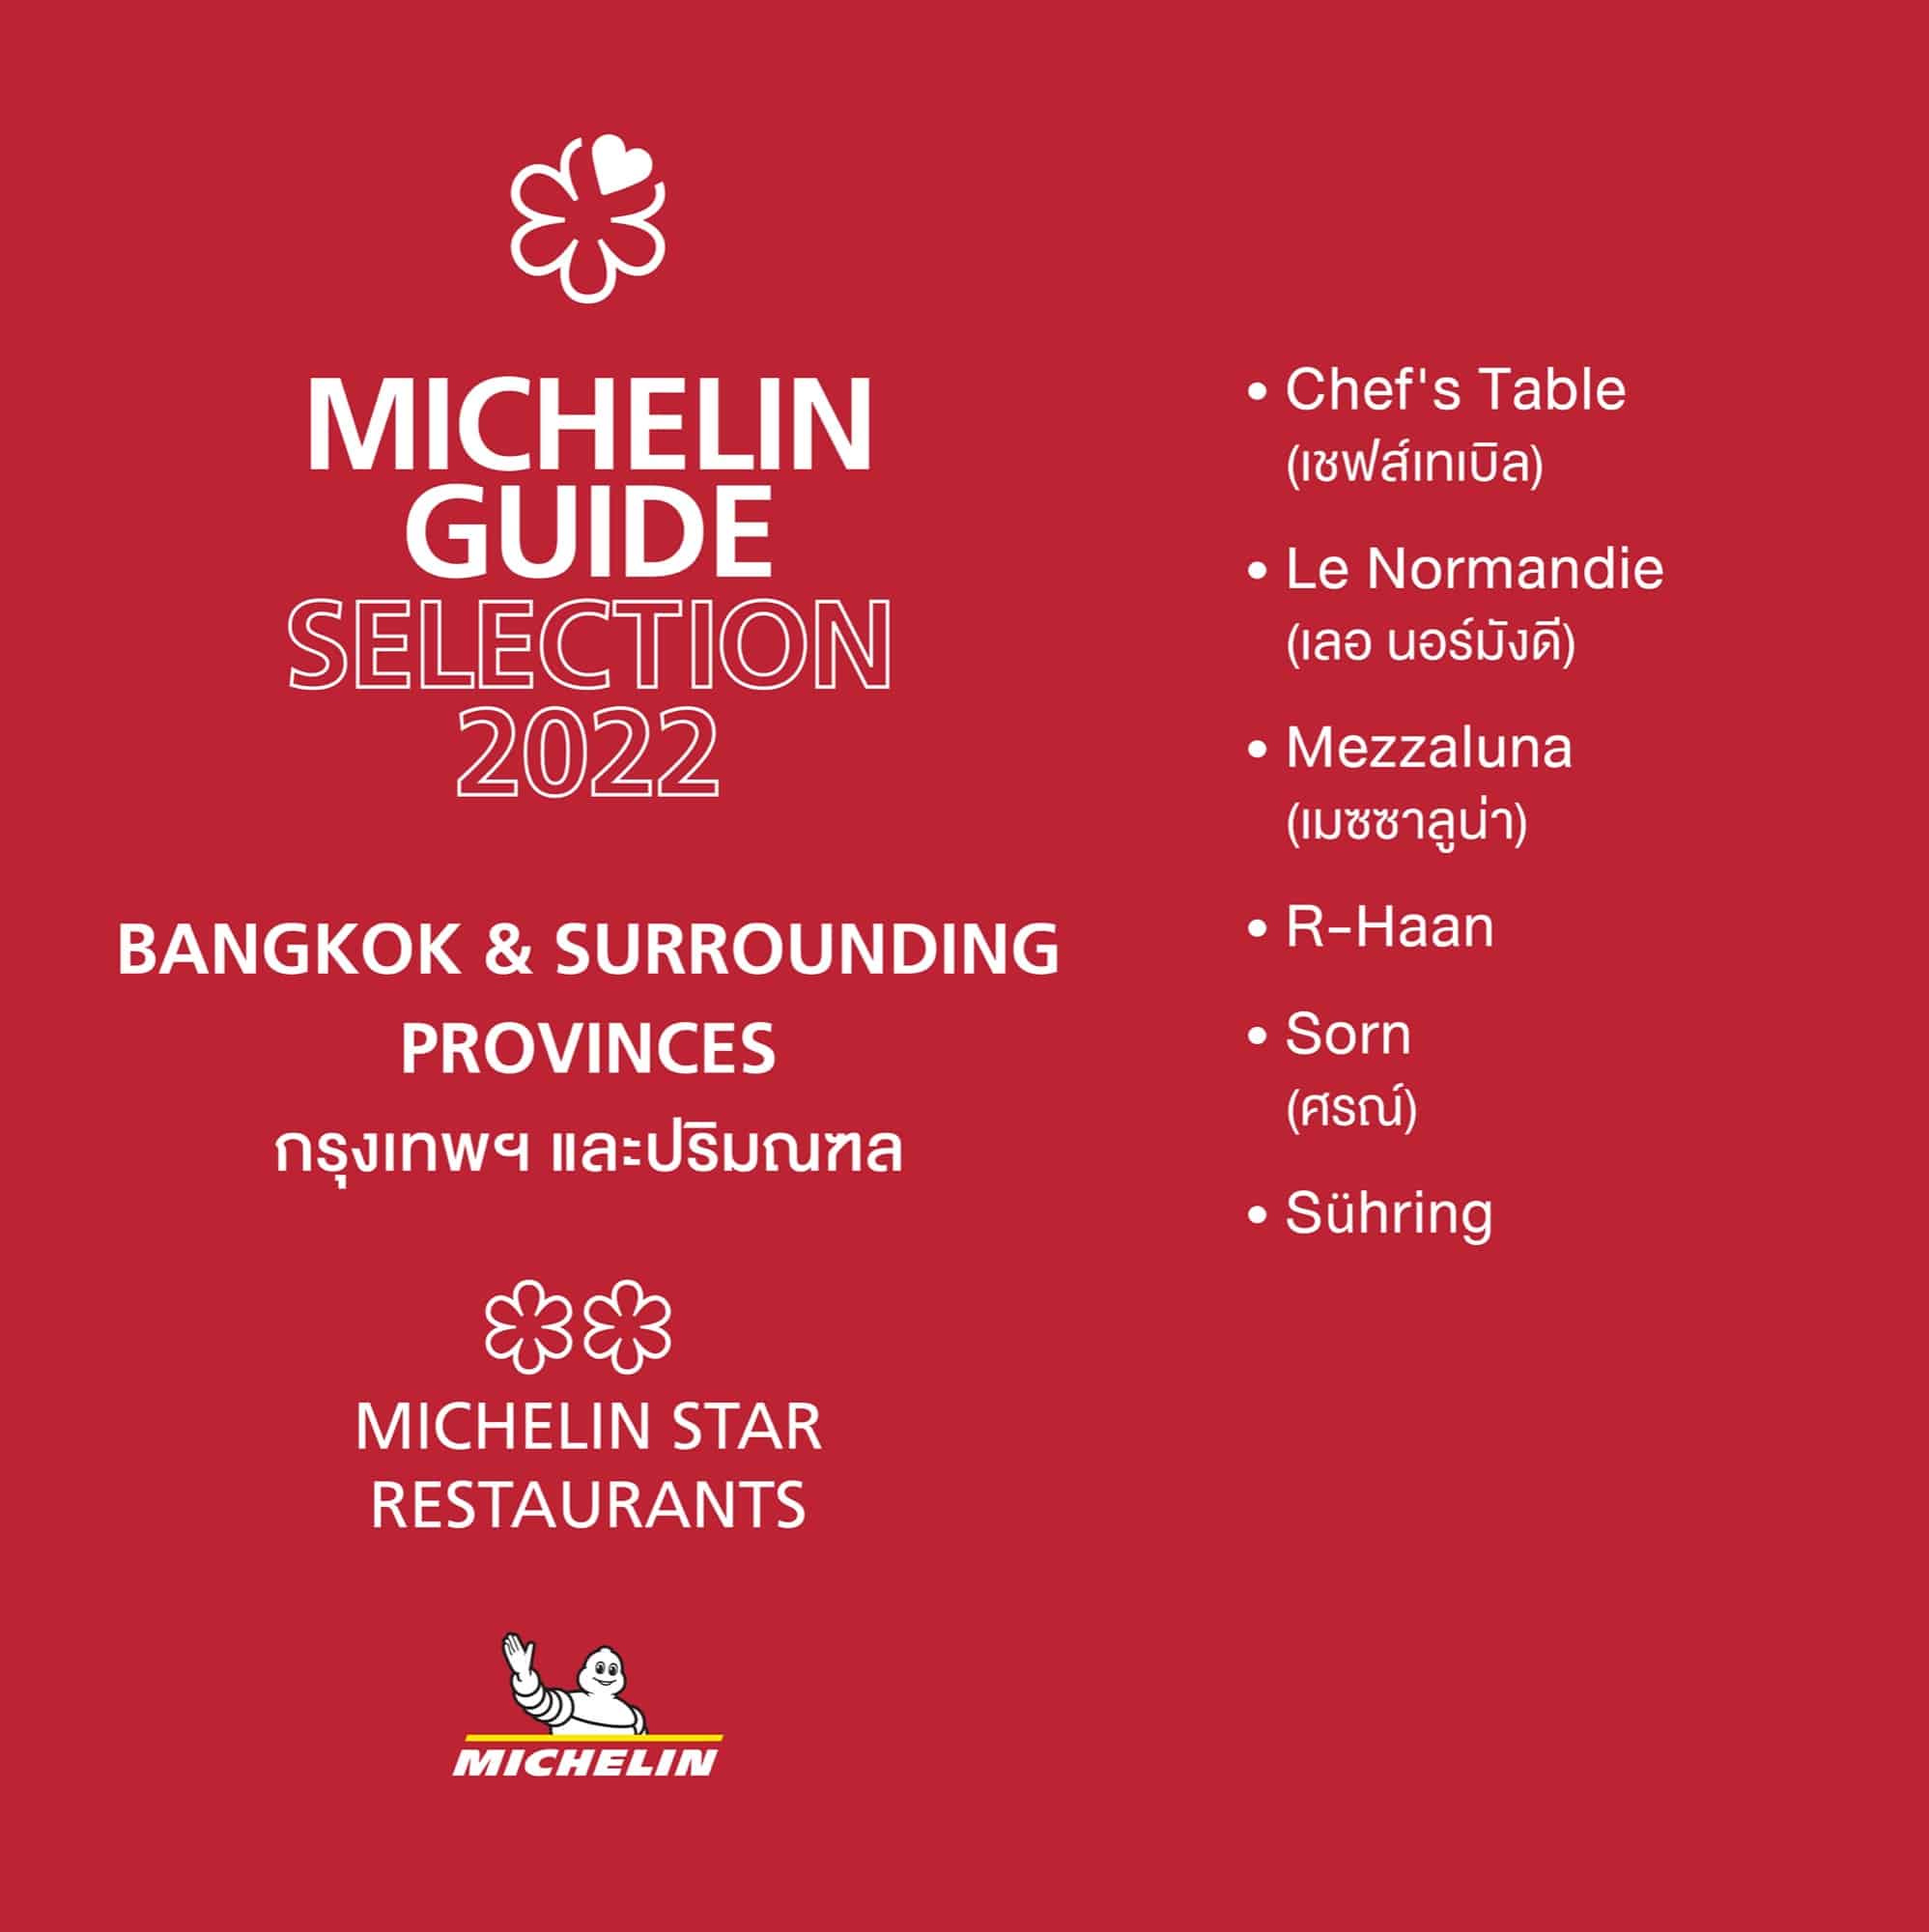 เปิดตัวคู่มือ "มิชลิน ไกด์" ฉบับประเทศไทย ประจำปี 2565 ครั้งแรกที่มีร้านติดอันดับ "1 ดาวมิชลิน" ถึง 6 ร้าน 7